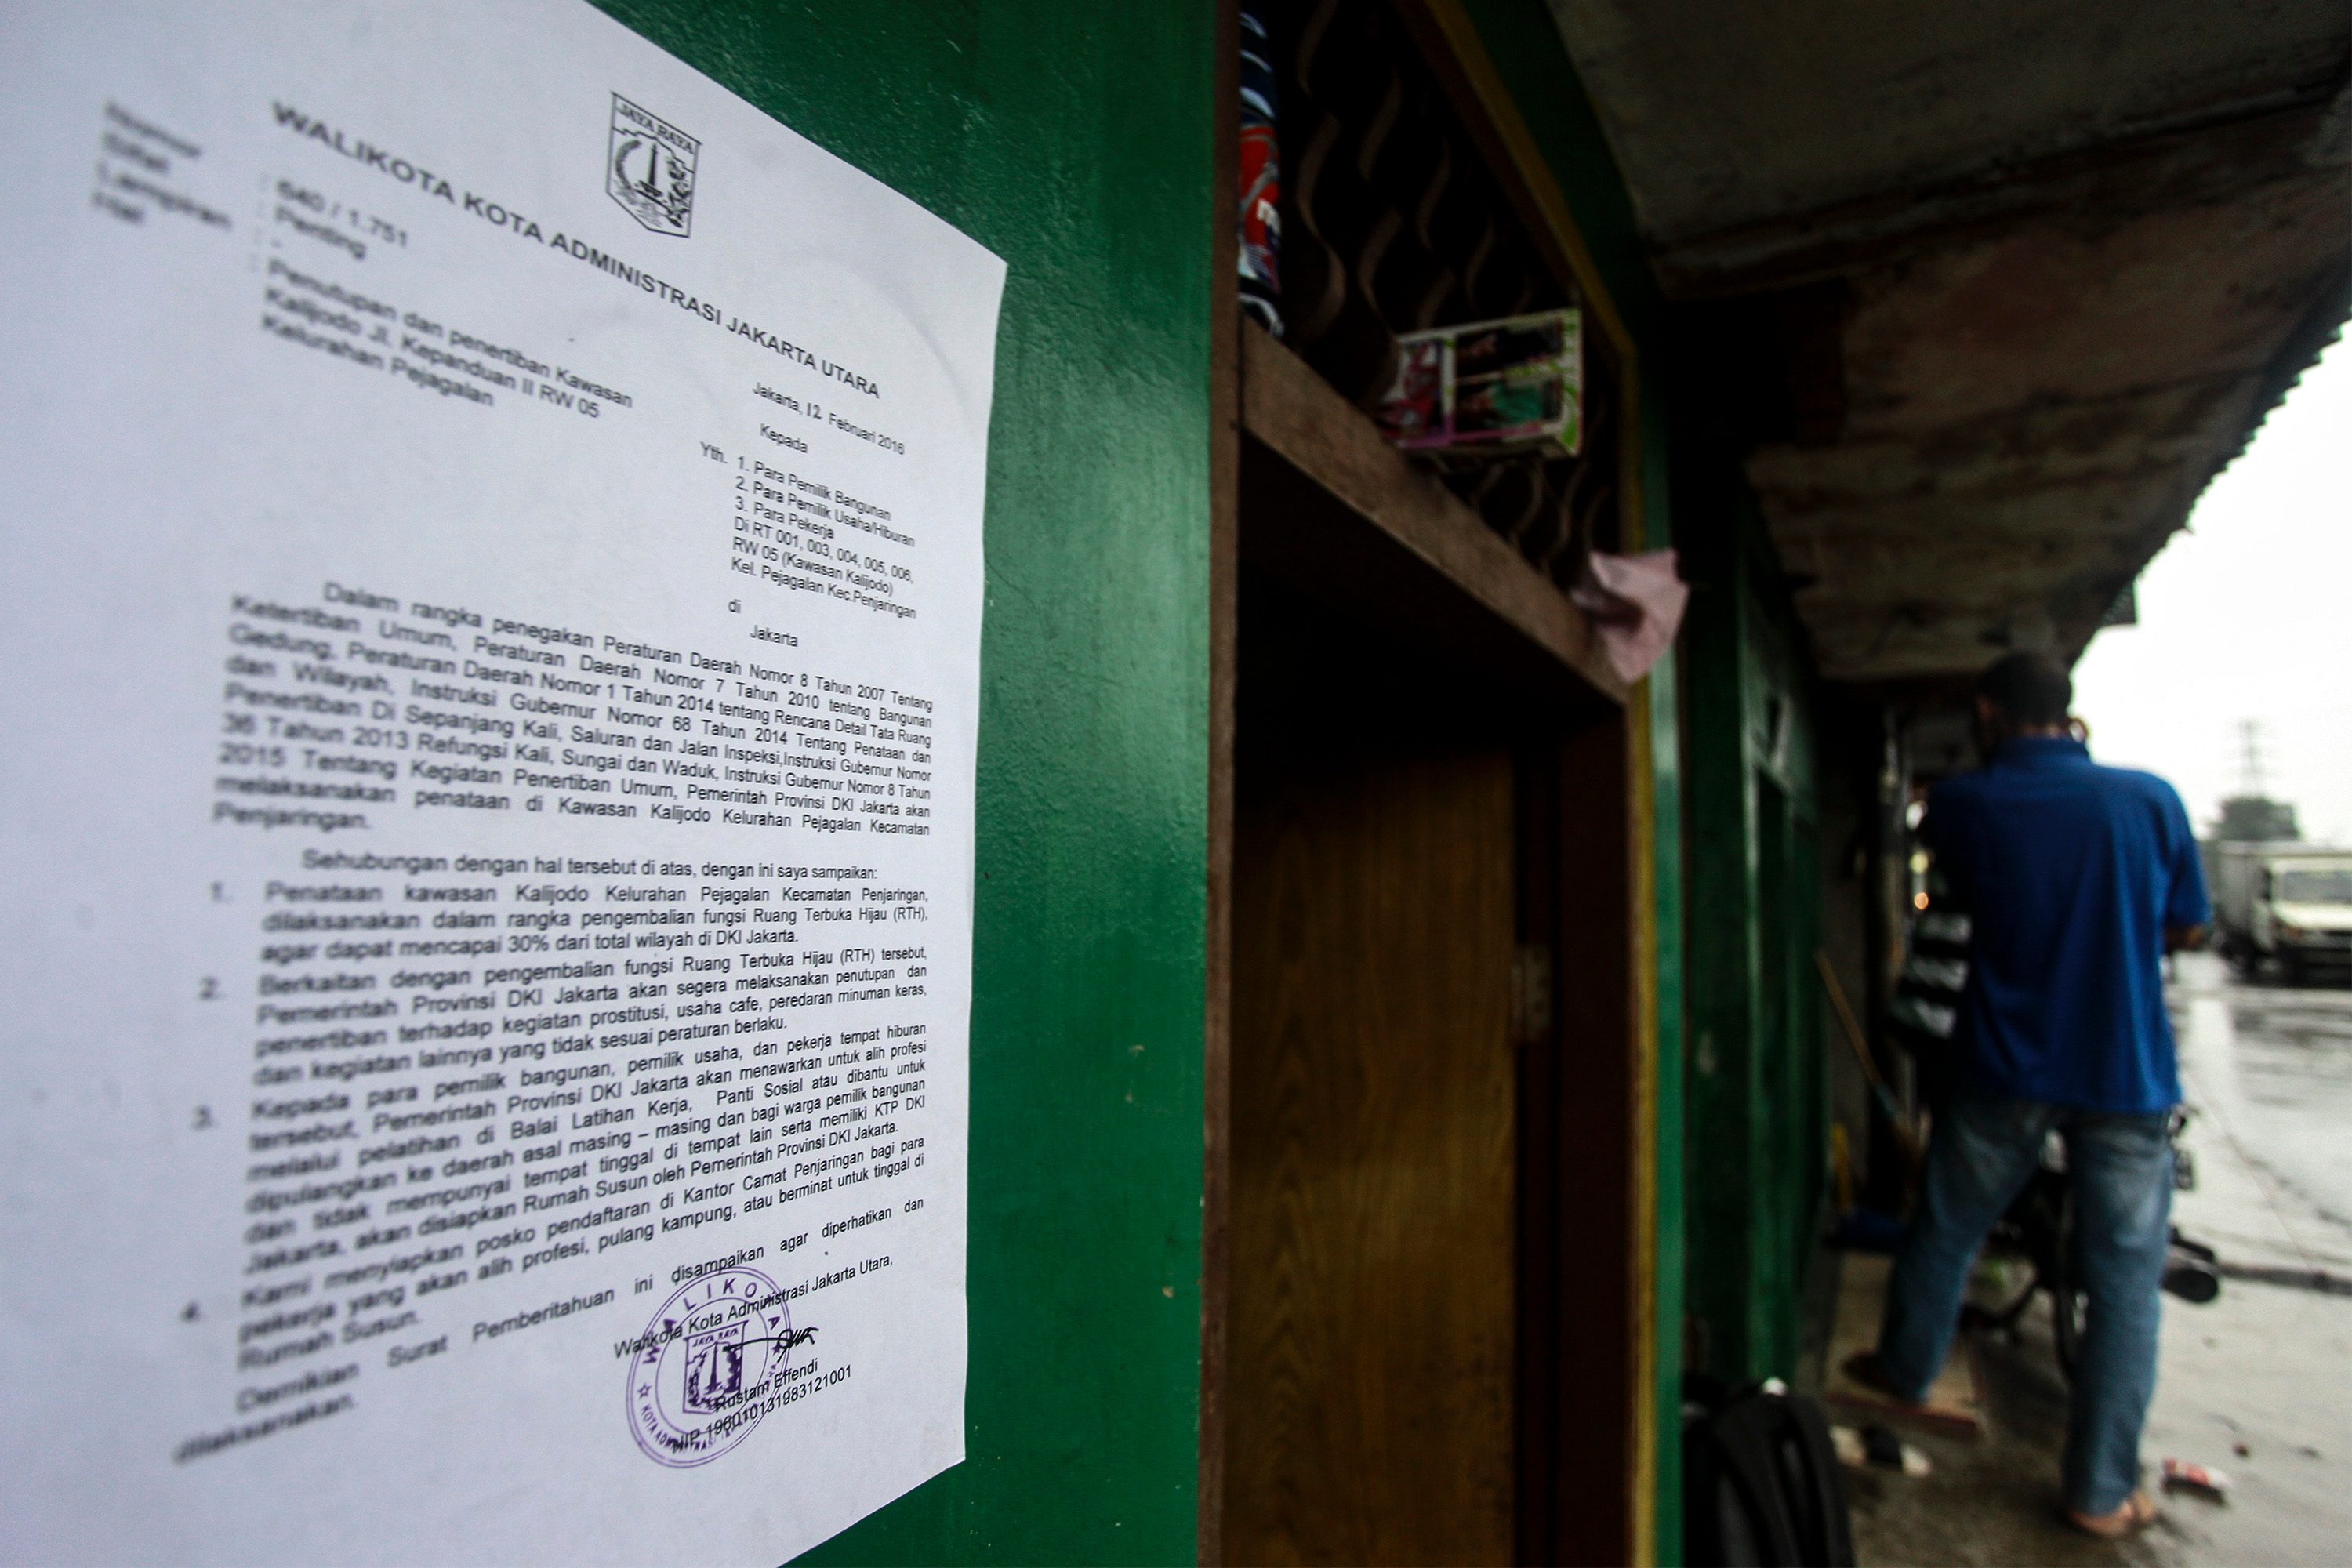 Surat pemberitahuan Pemprov DKI Jakarta tertempel di salah satu rumah di kawasan Kalijodo. Foto oleh Muhammad Adimaja/Antara 